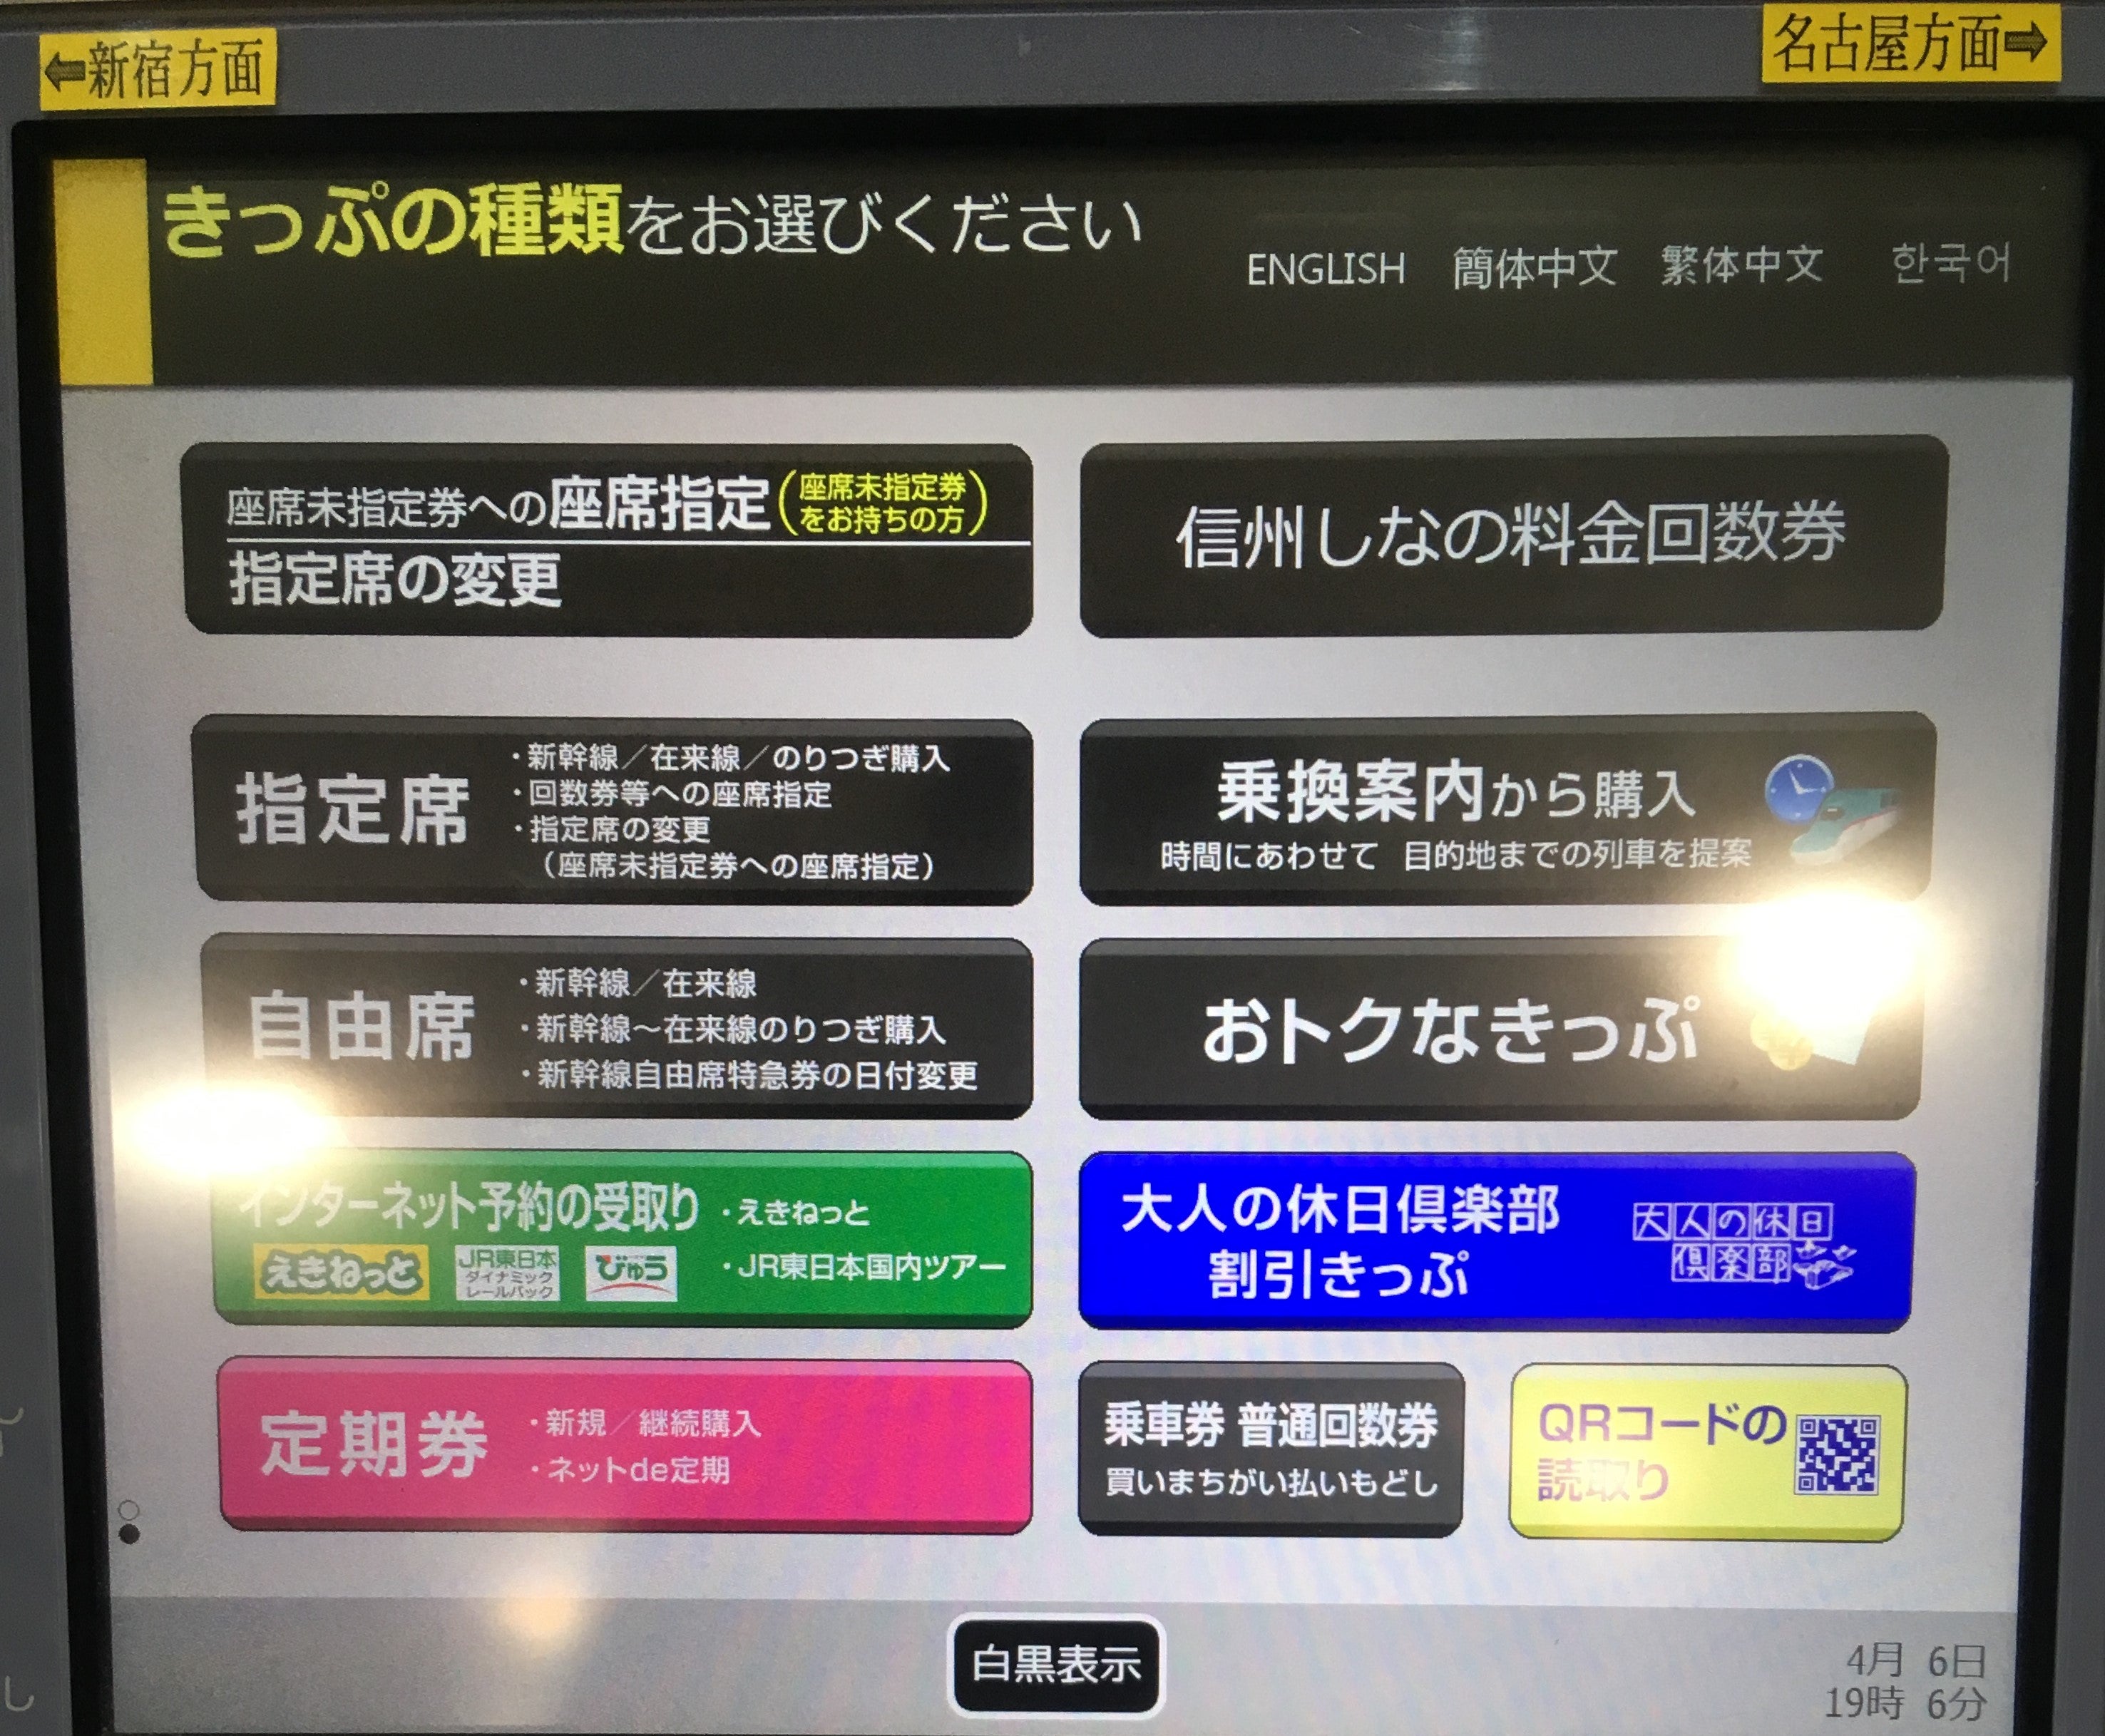 切符 予約 jr Google マップから新幹線や特急列車の予約が可能に、経路検索の結果からJR東日本の切符販売サイト「えきねっと」に遷移